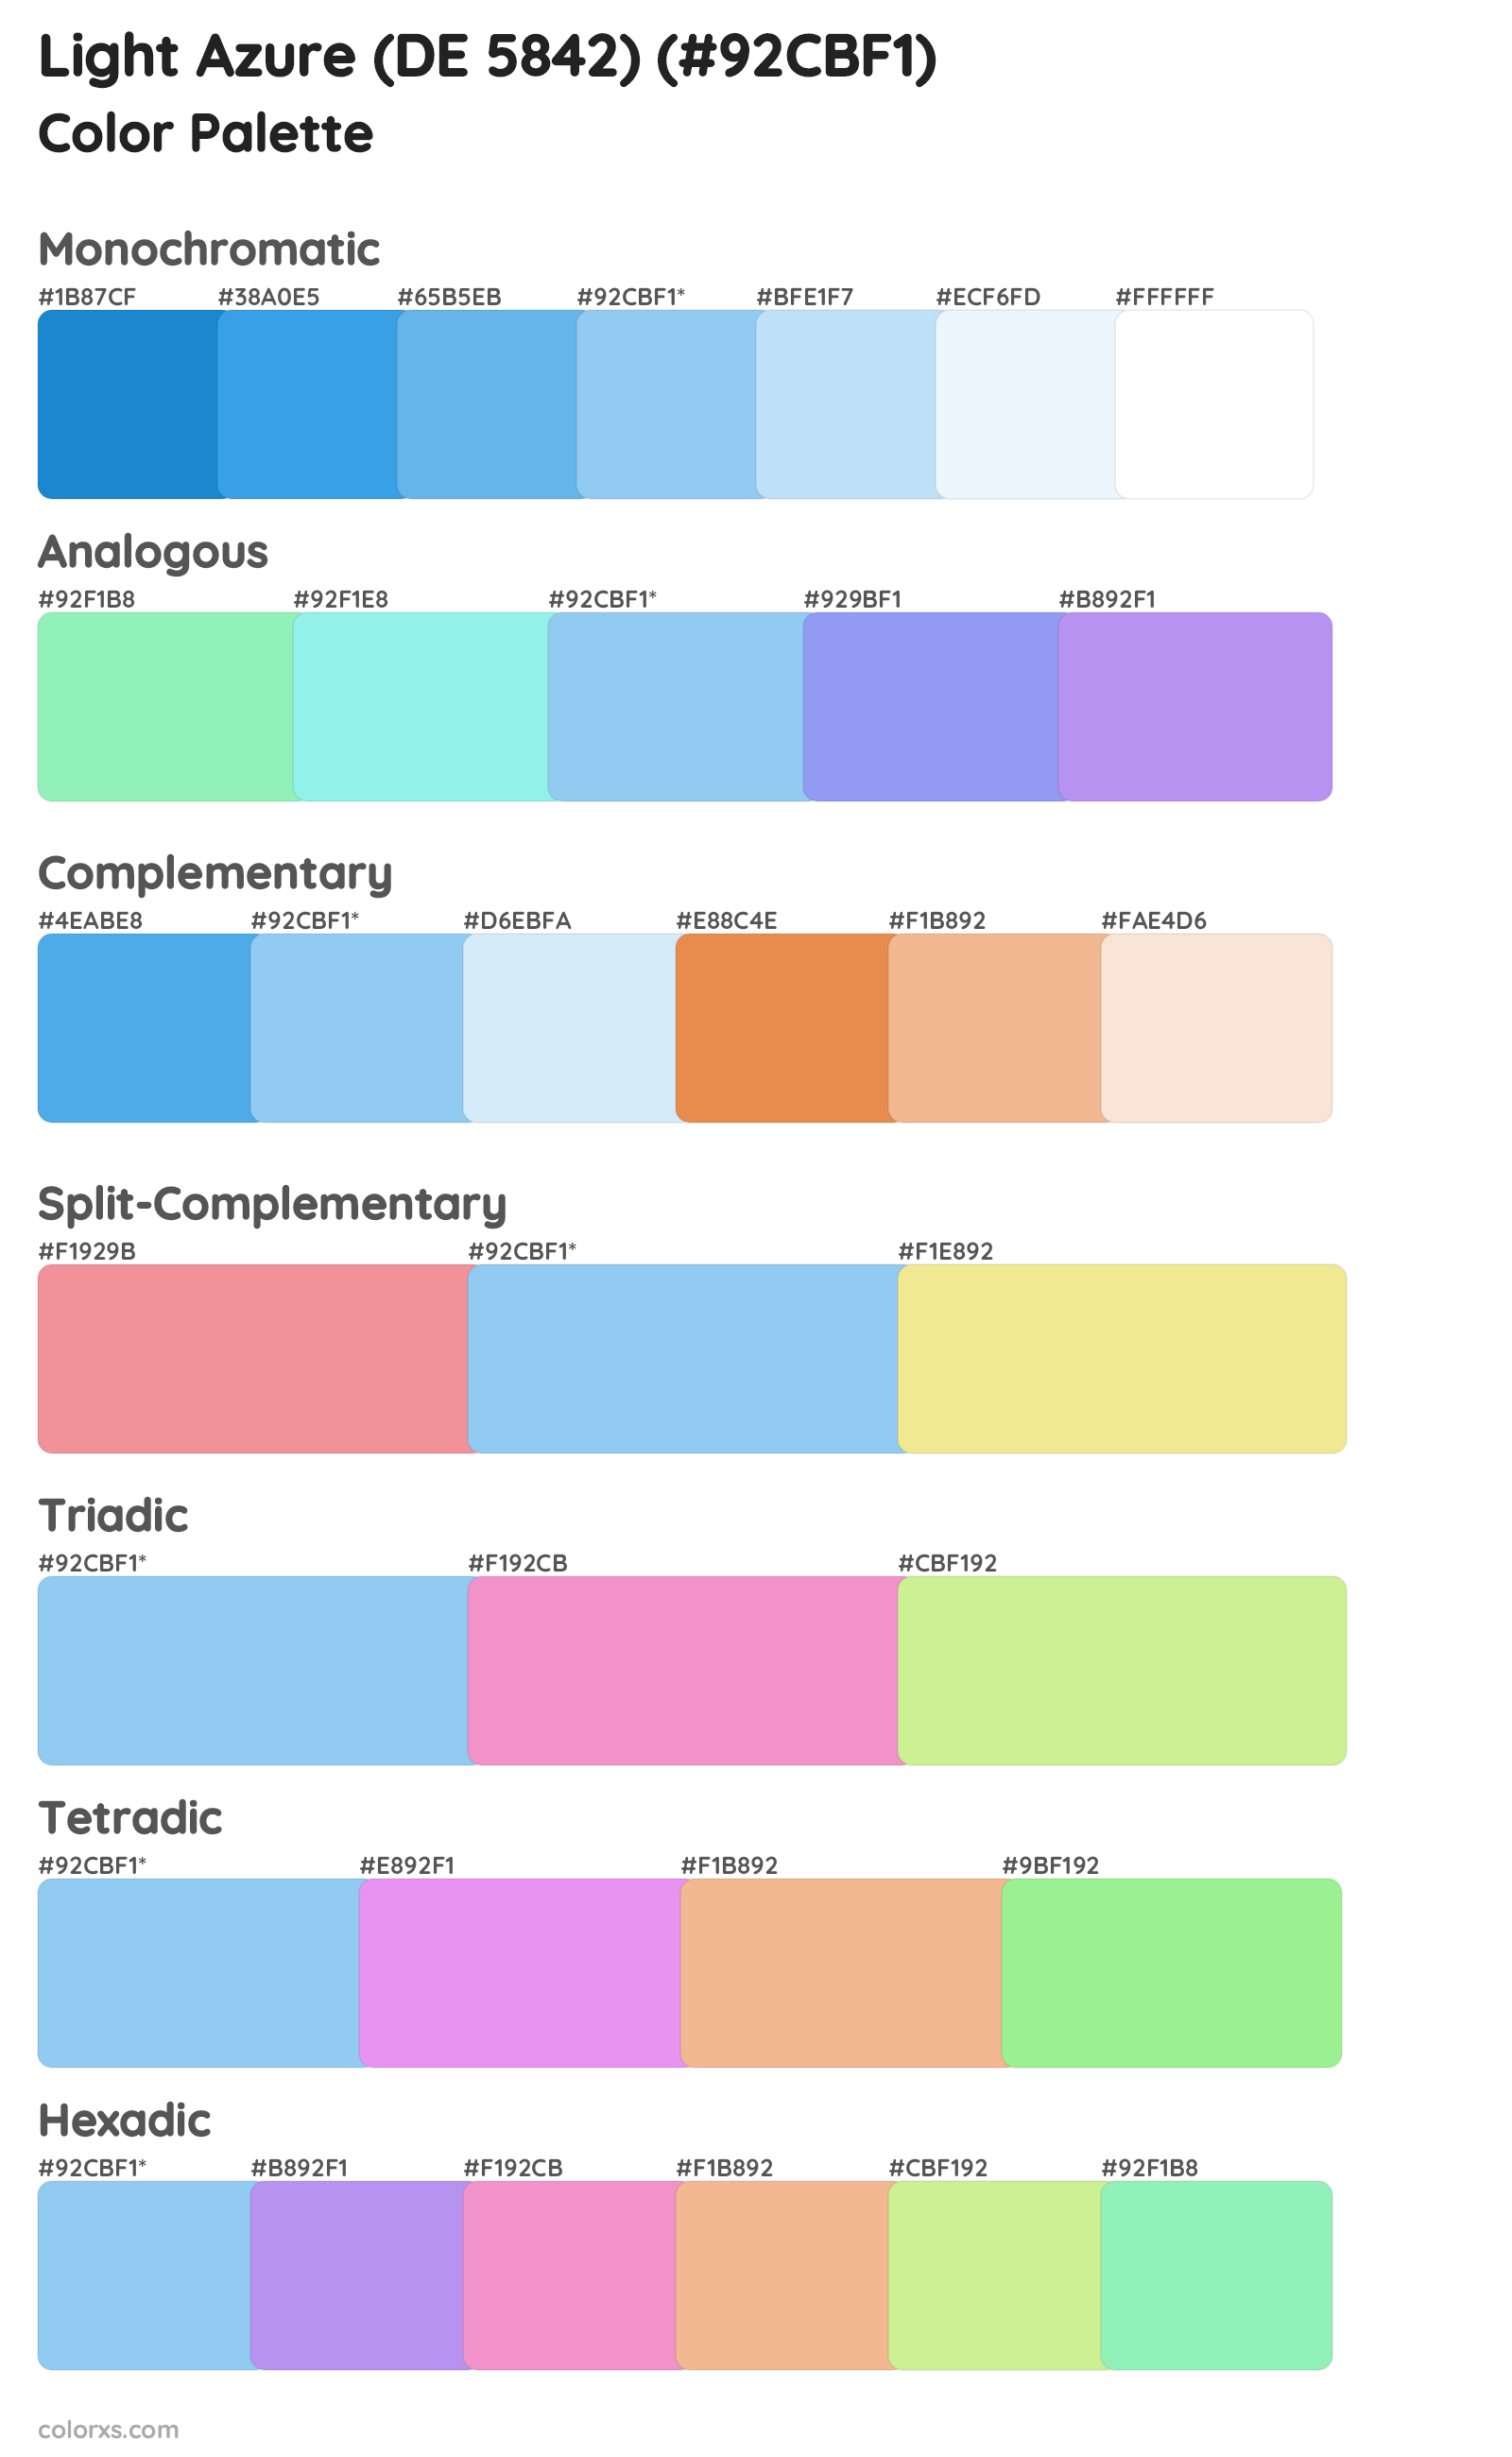 Light Azure (DE 5842) Color Scheme Palettes